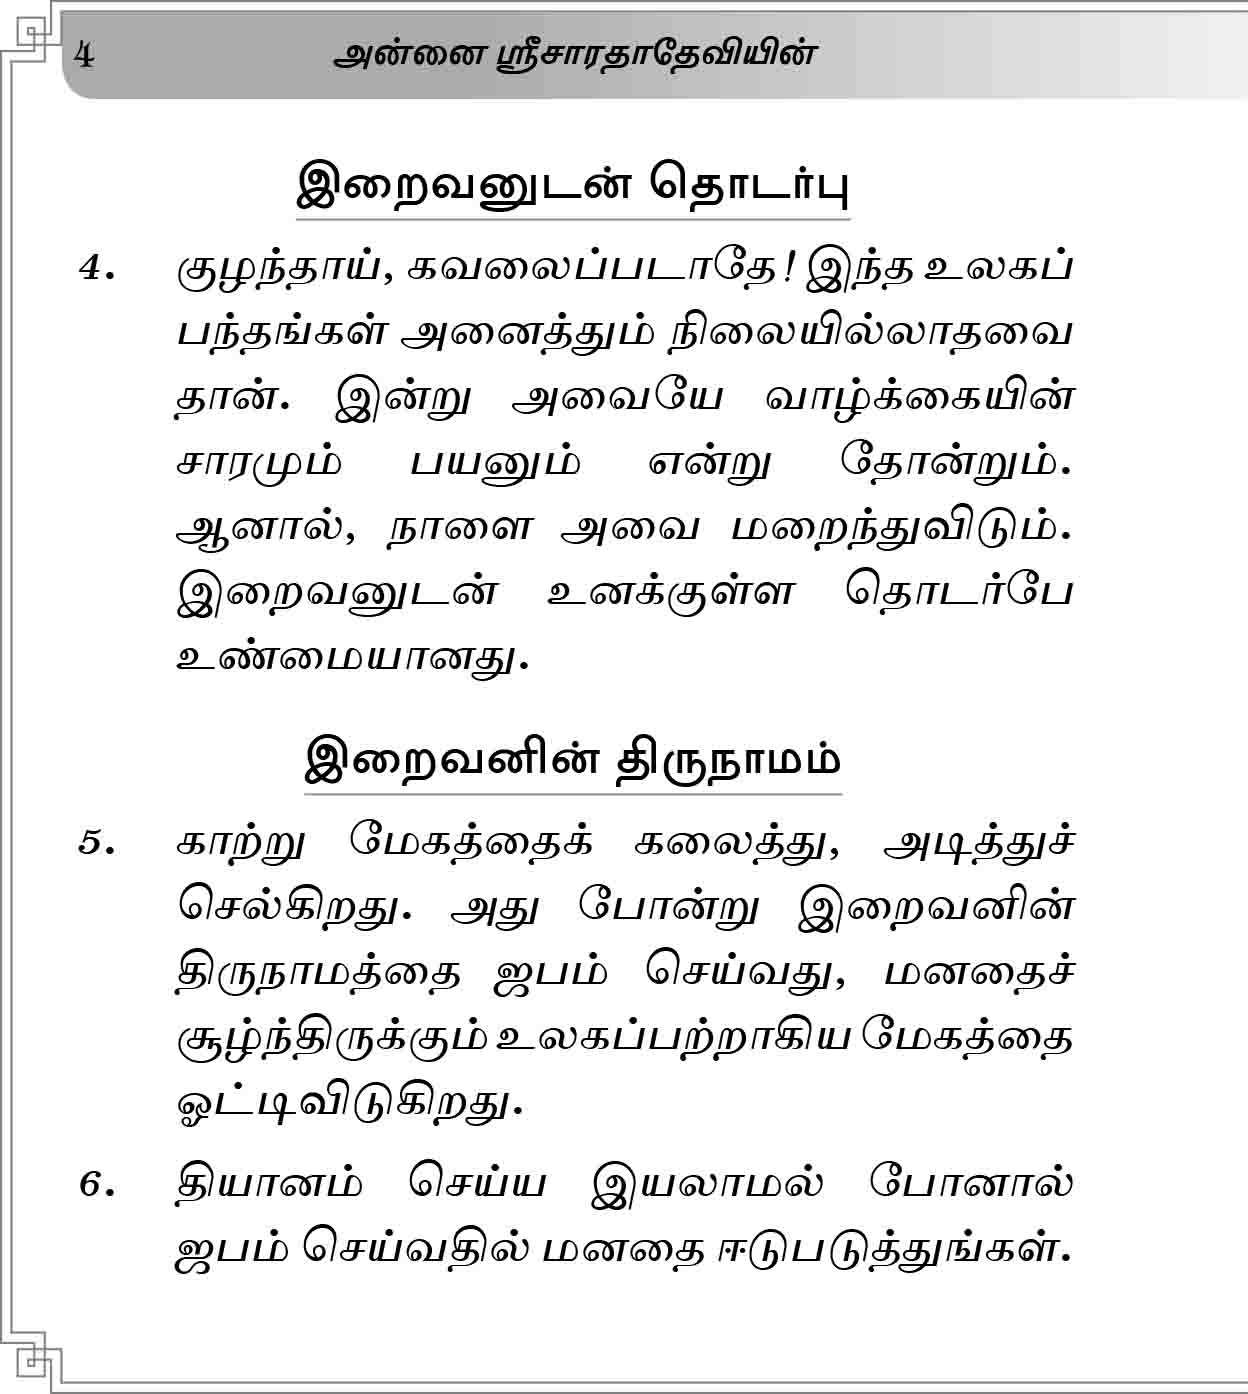 Annai Sri Sarada Deviyin 125 Arivuraigal (Tamil)